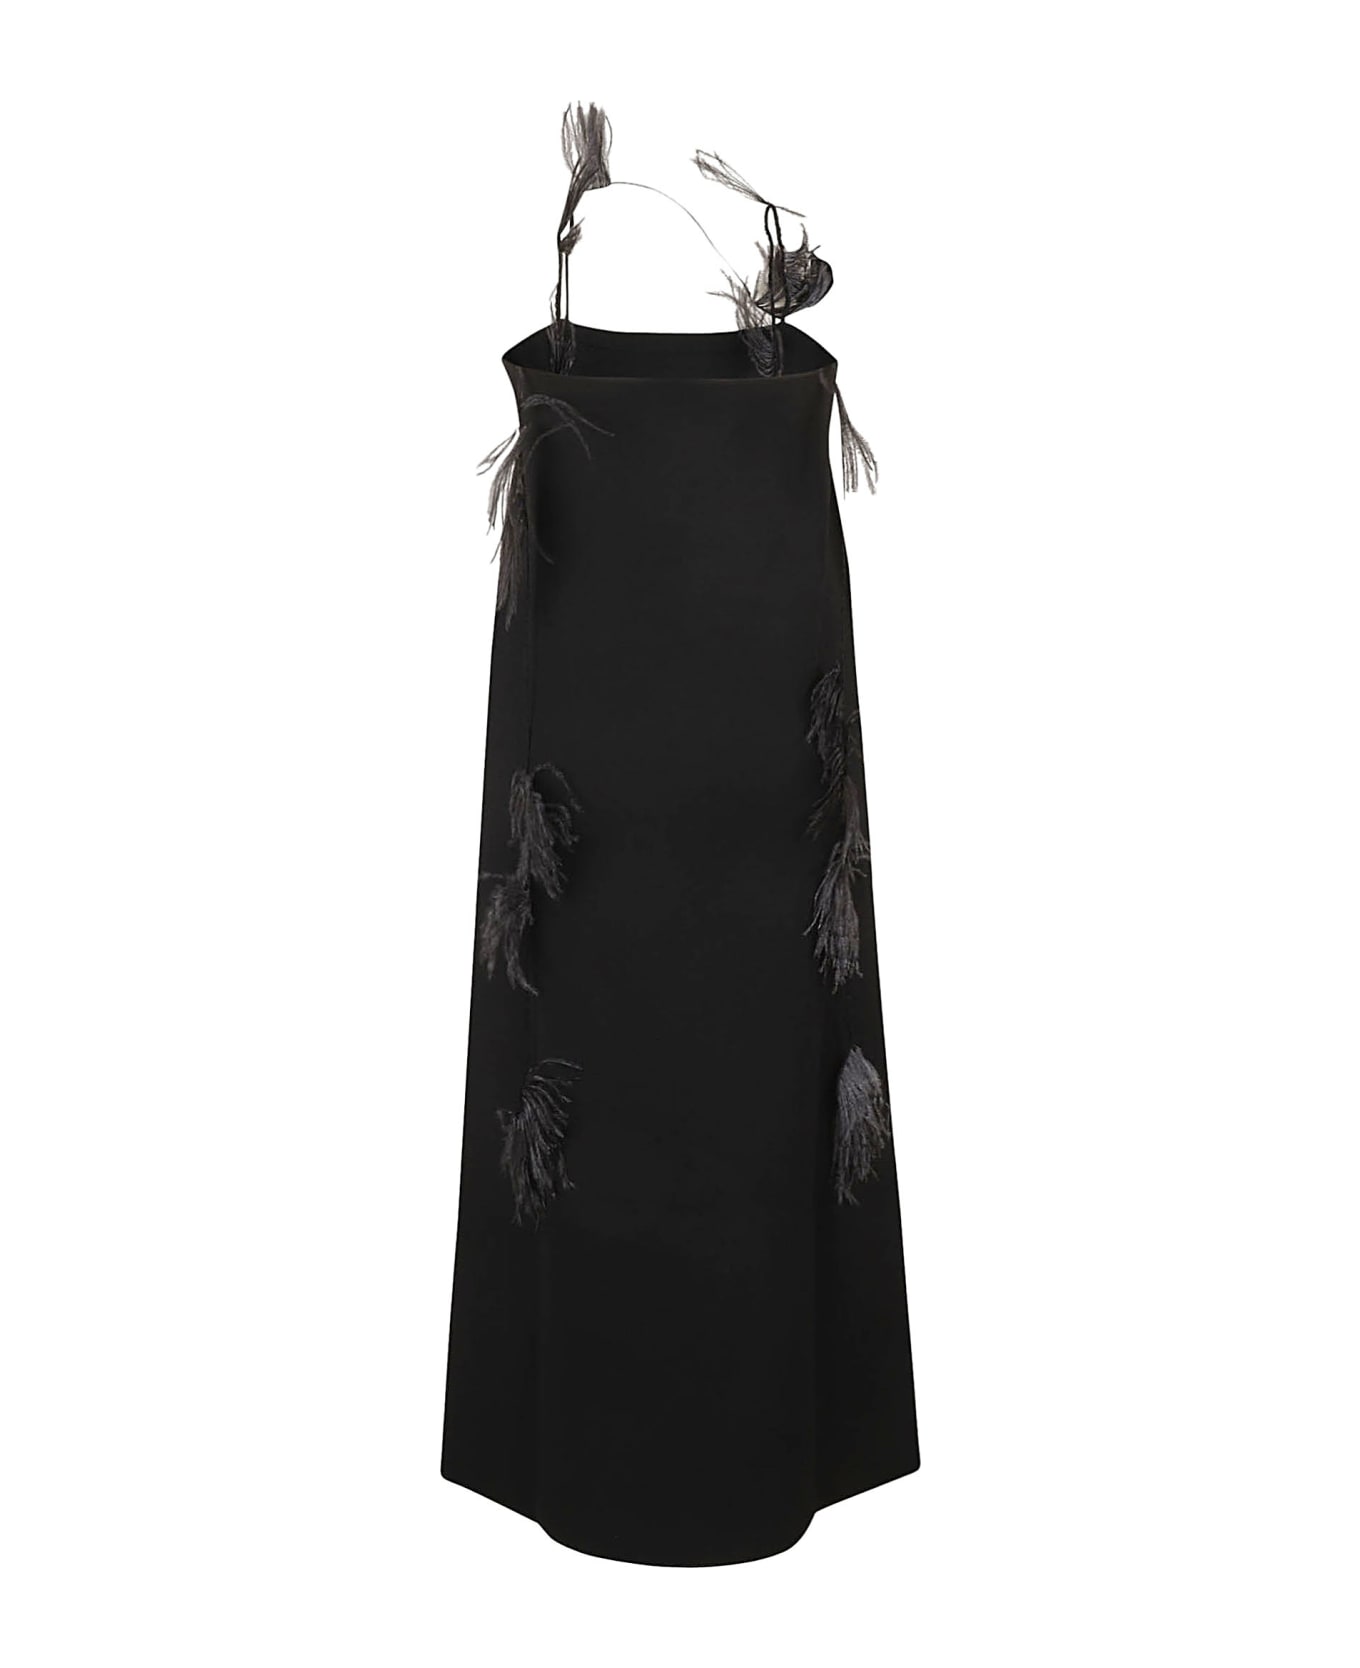 Jil Sander Interlock Knit Dress - Black